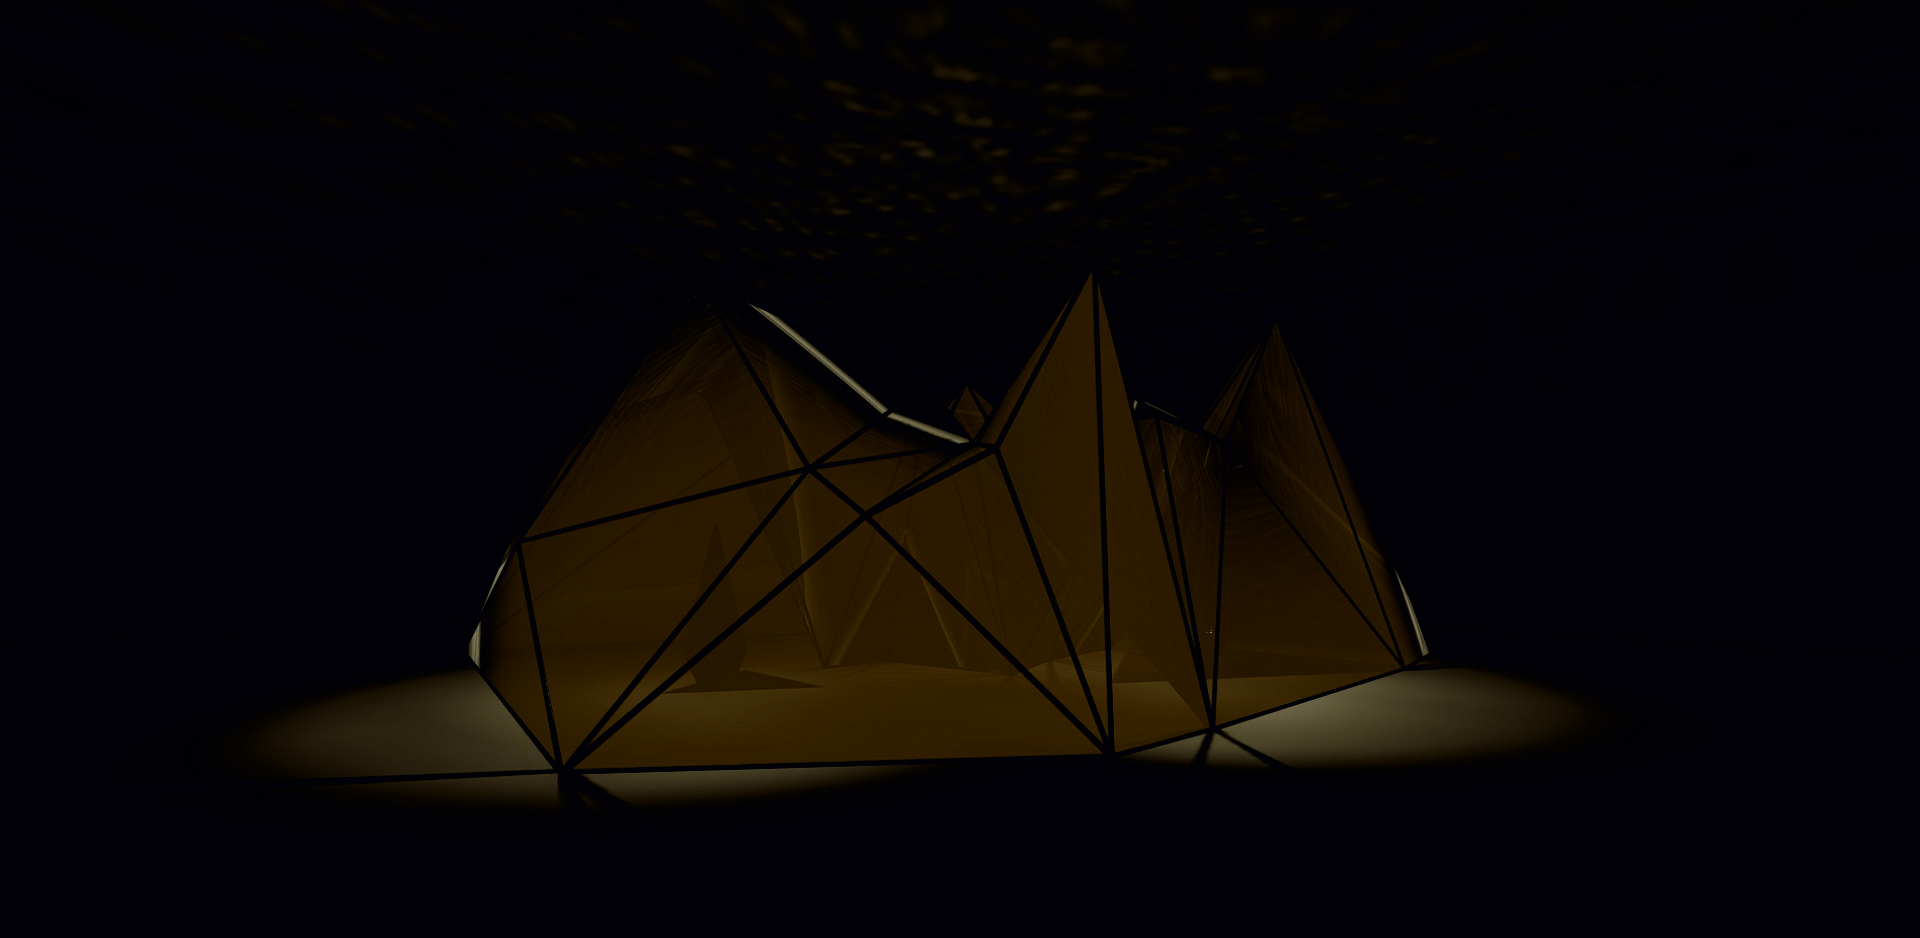 Zgeometryzowana forma tworząca mały pawilon wystawienniczy. Ściany zbudowane z trójkątów. Materiał podobny do kocy termicznych, przepuszcza światło z zewnątrz.